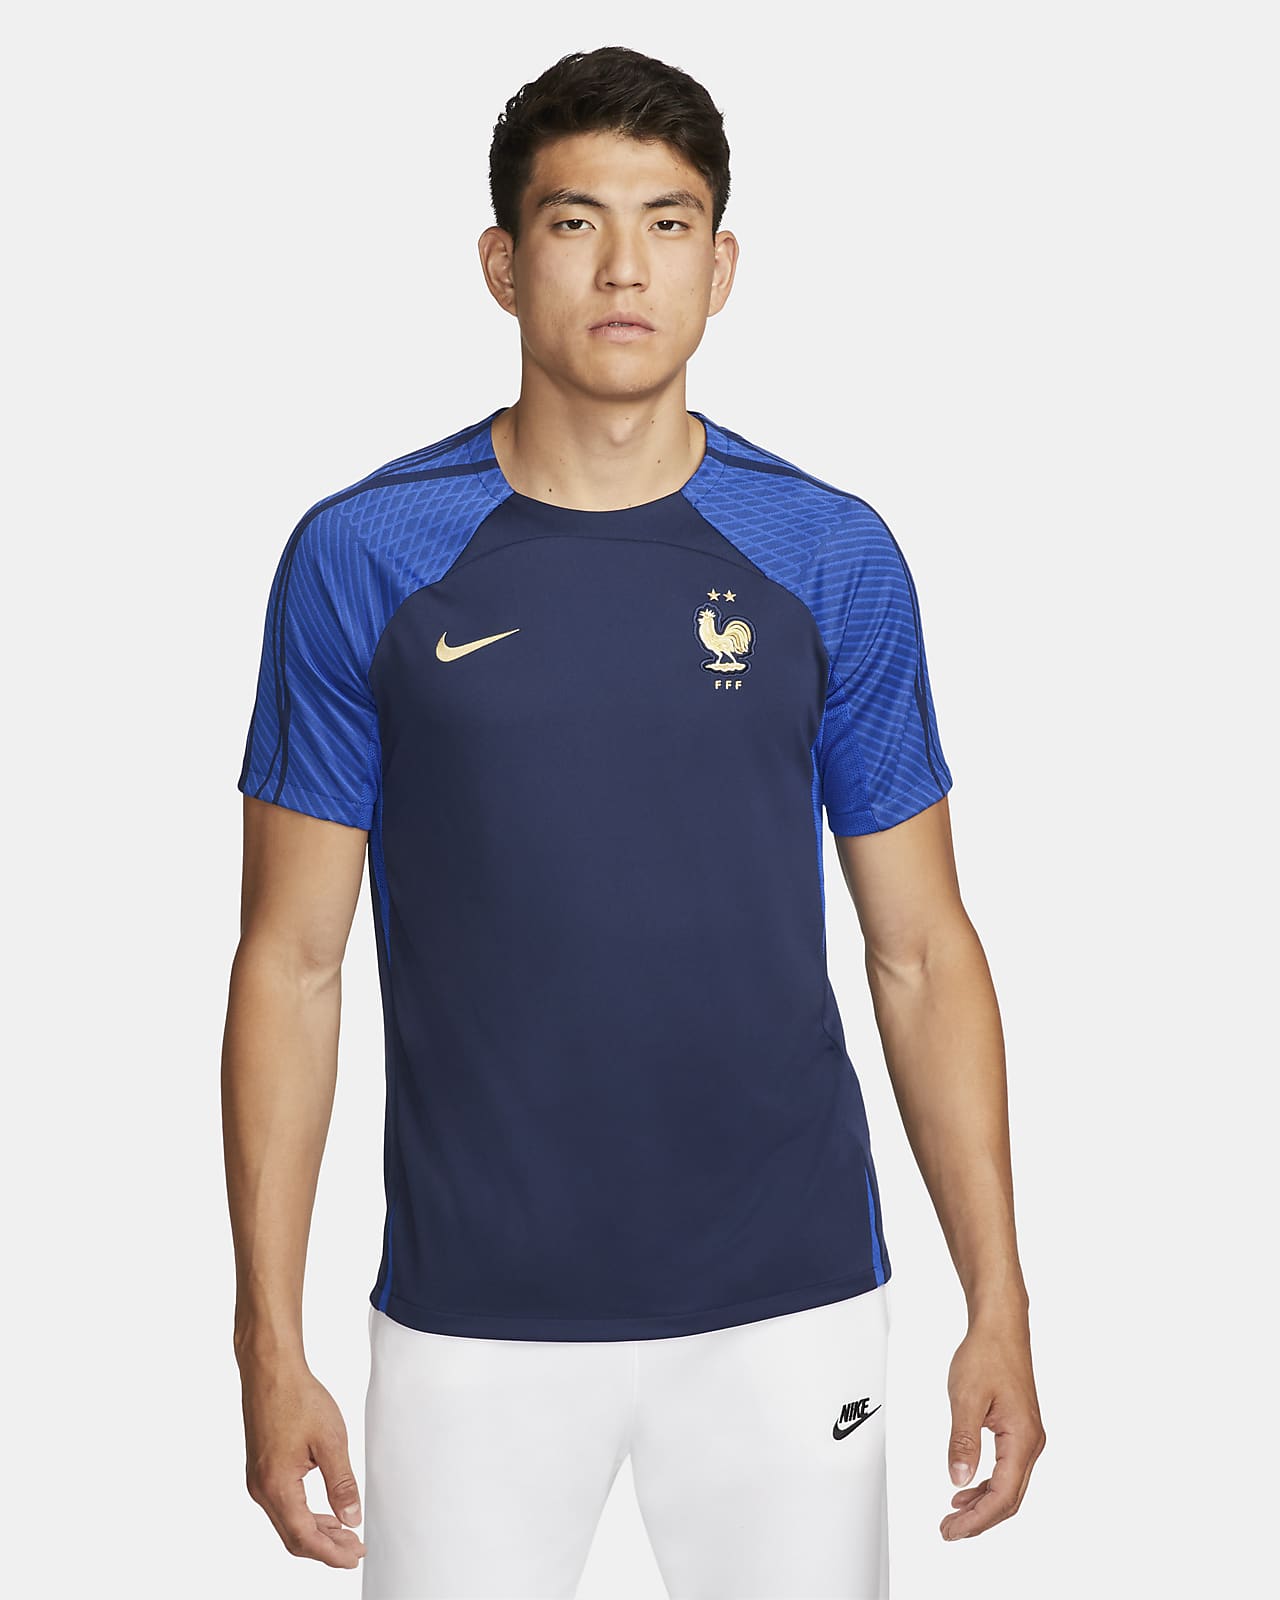 Playera de fútbol de manga corta Nike para hombre de Francia Strike. Nike.com